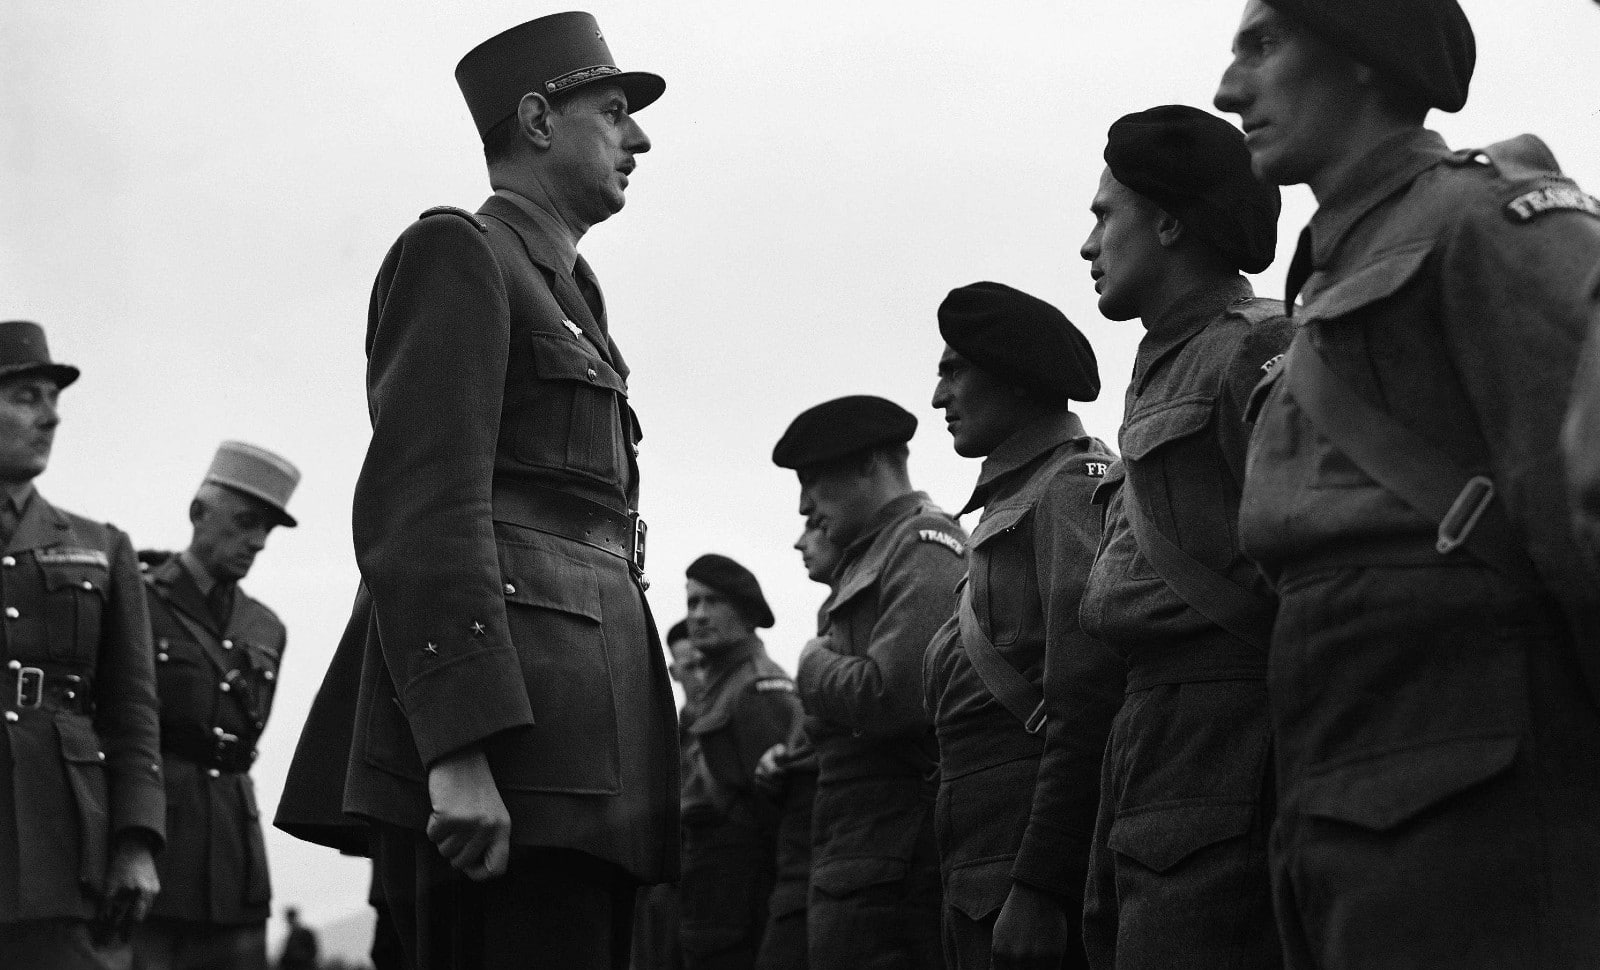 Le général de Gaulle inspecte les forces libres françaises en Angleterre.
Numéro de reportage  : AP21581151_000002
AP/SIPA